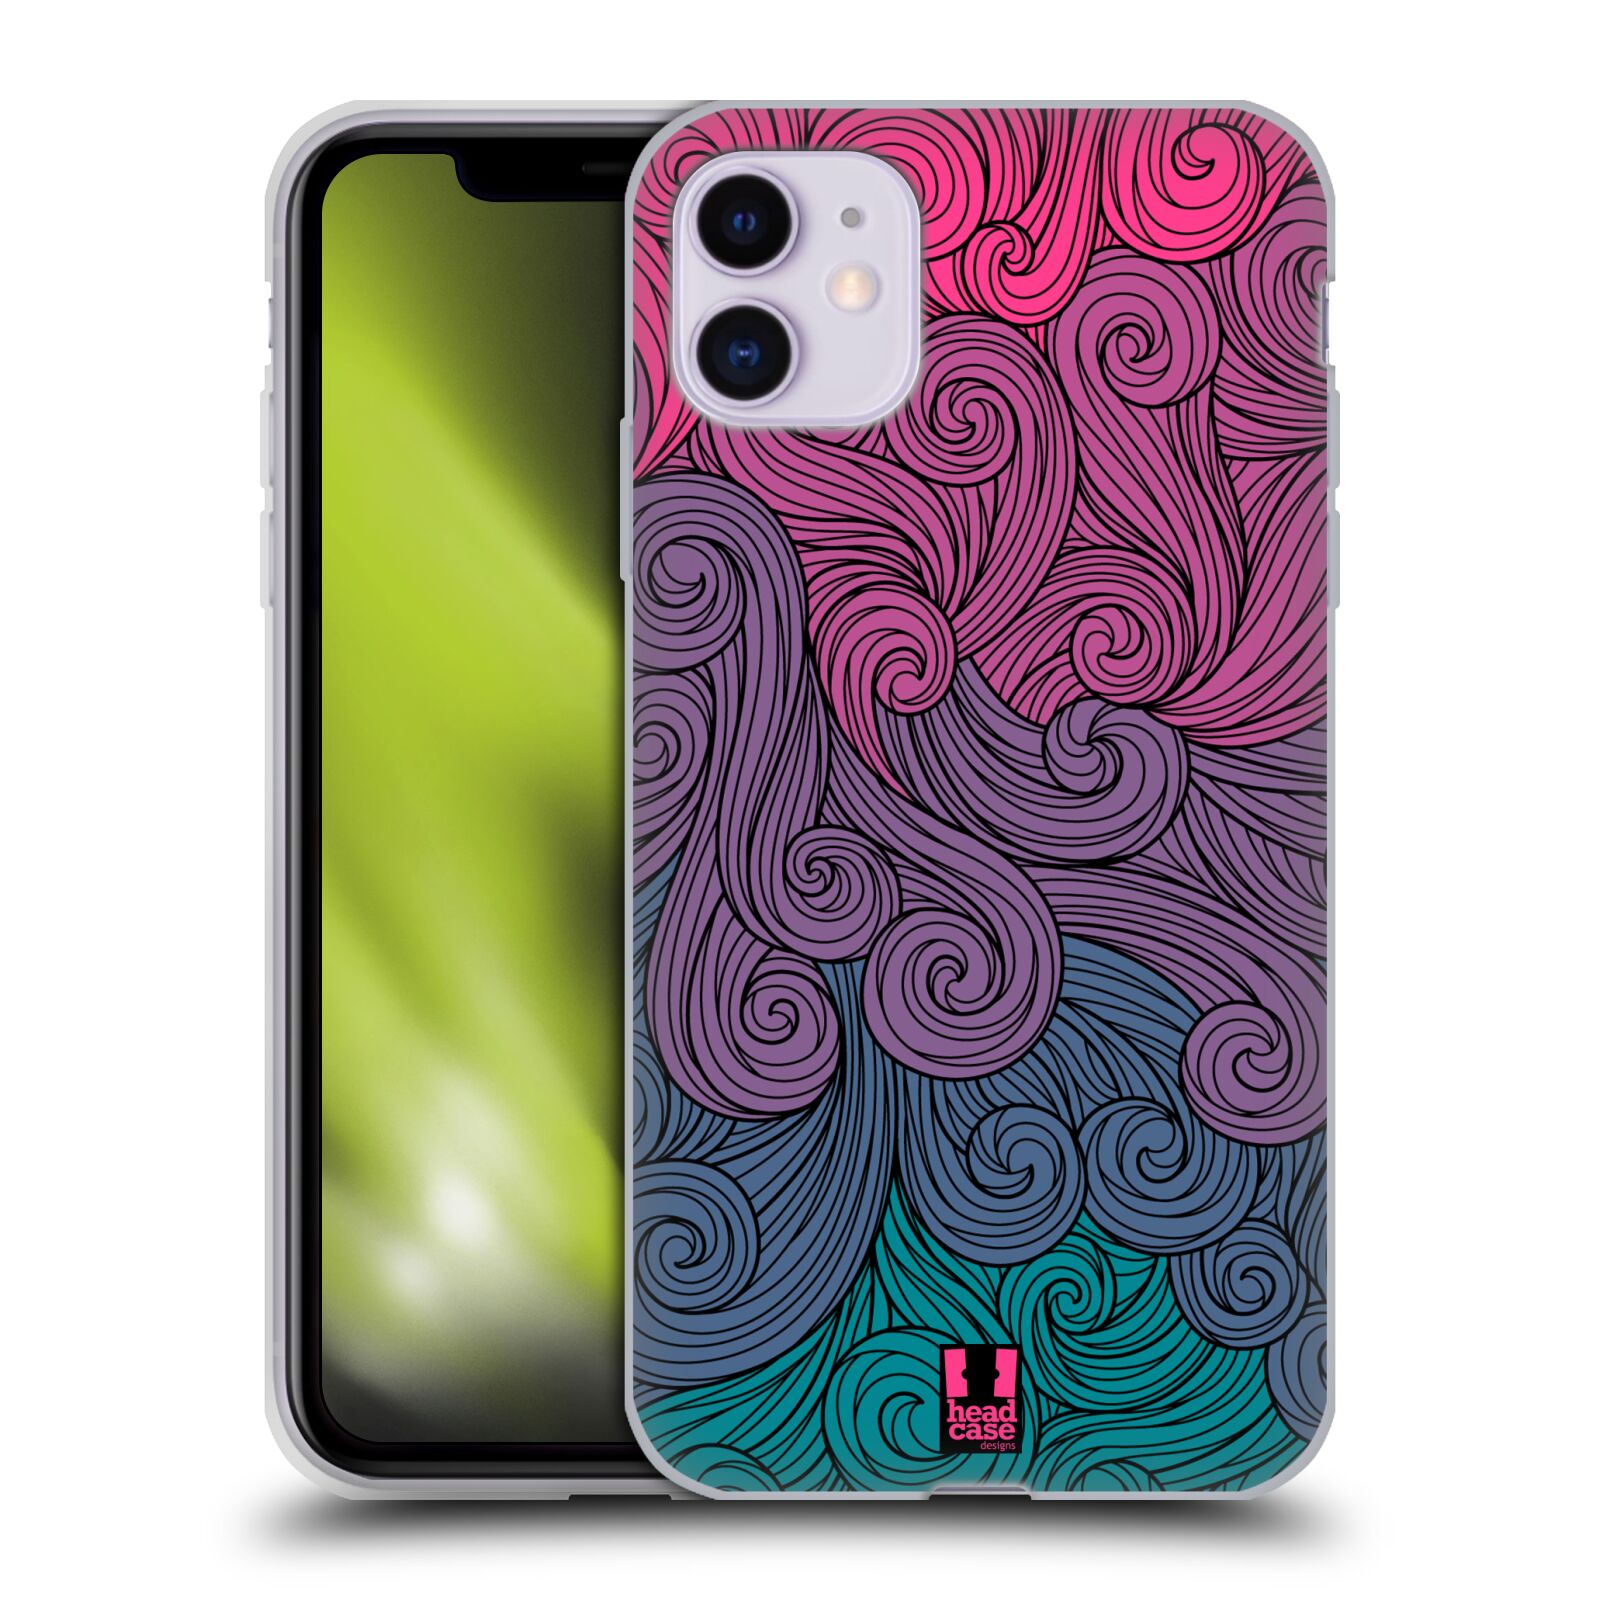 Silikonové pouzdro na mobil Apple iPhone 11 - Head Case - Swirls Hot Pink (Silikonový kryt, obal, pouzdro na mobilní telefon Apple iPhone 11 s displejem 6,1" s motivem Swirls Hot Pink)